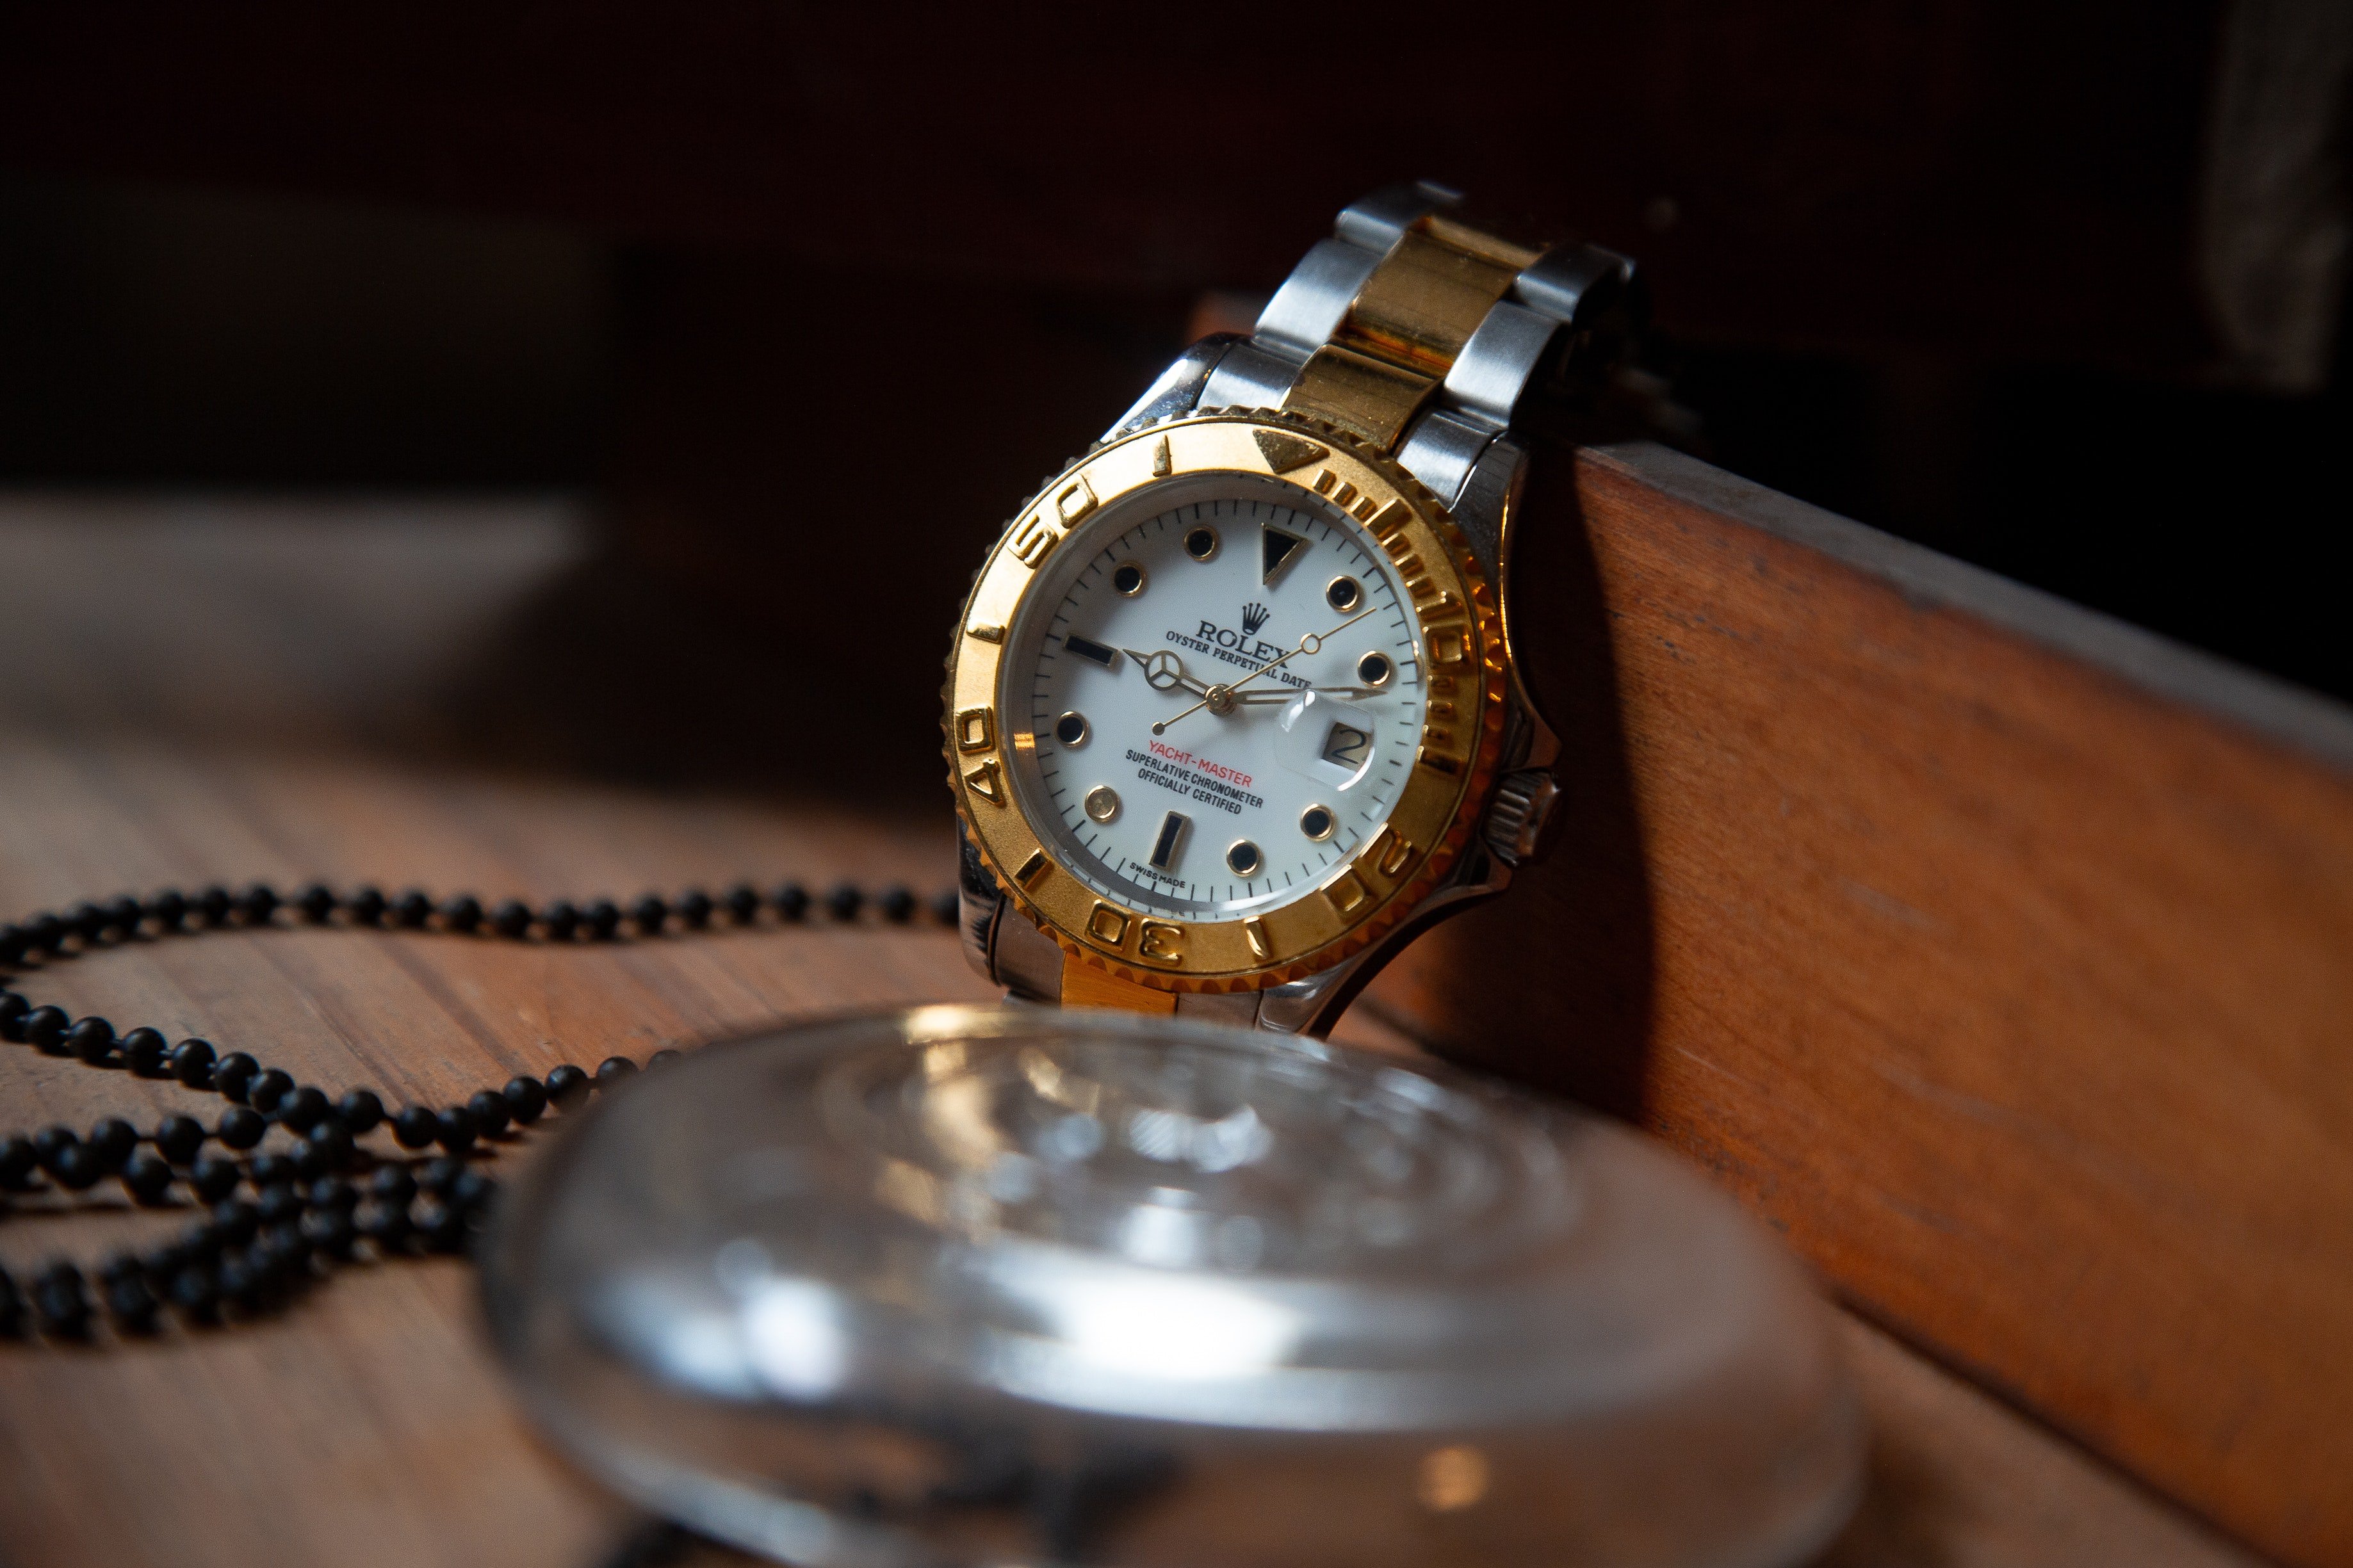 Une Rolex vintage était joliment installée à l'intérieur de la boîte en bois | Photo : Pexels